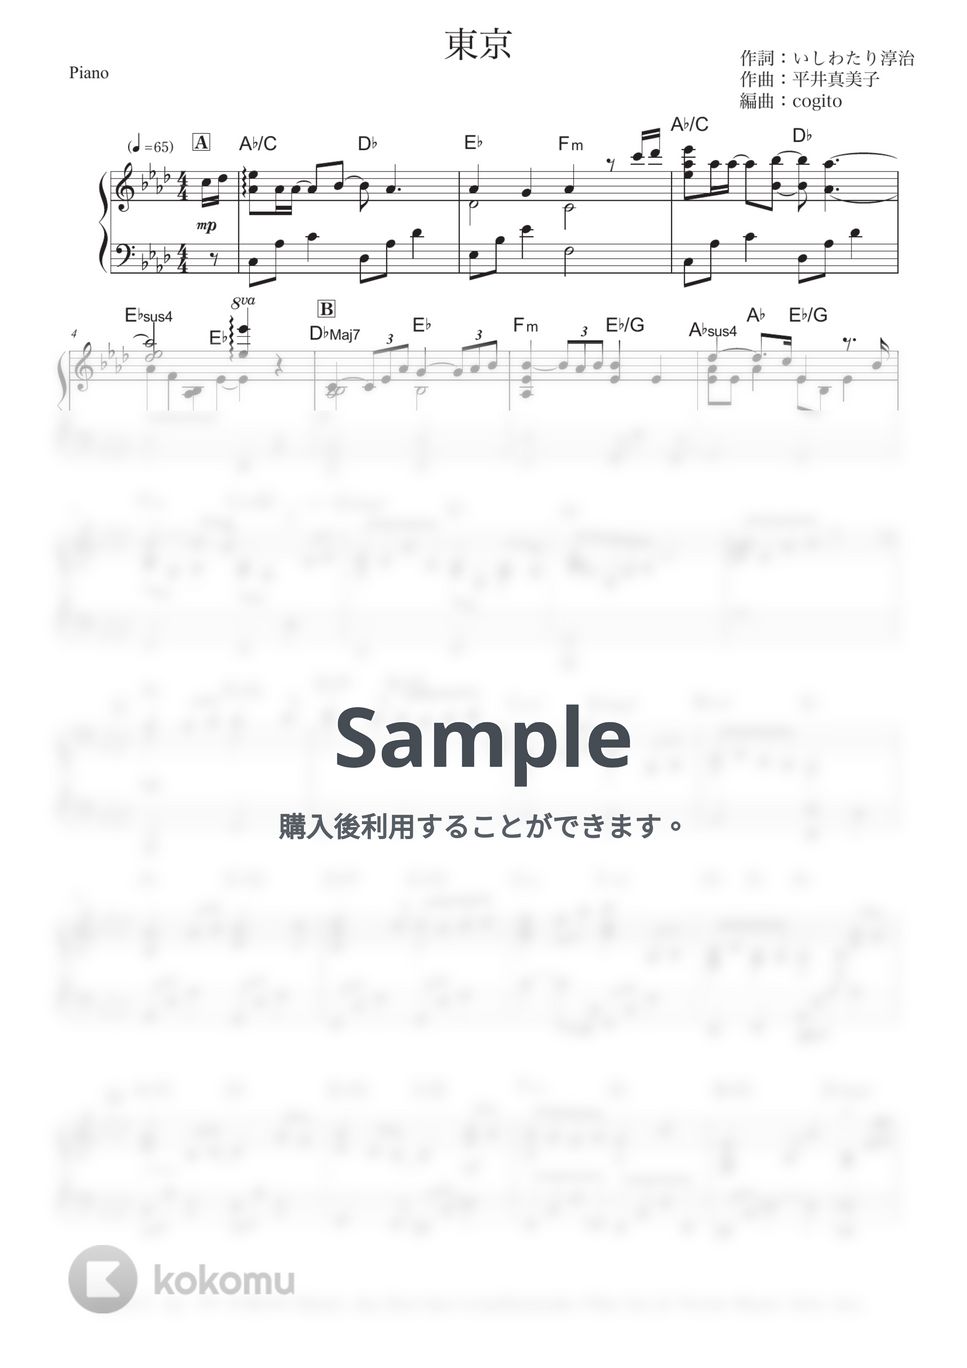 手嶌葵 - 東京 (ピアノソロ/上級) by cogito